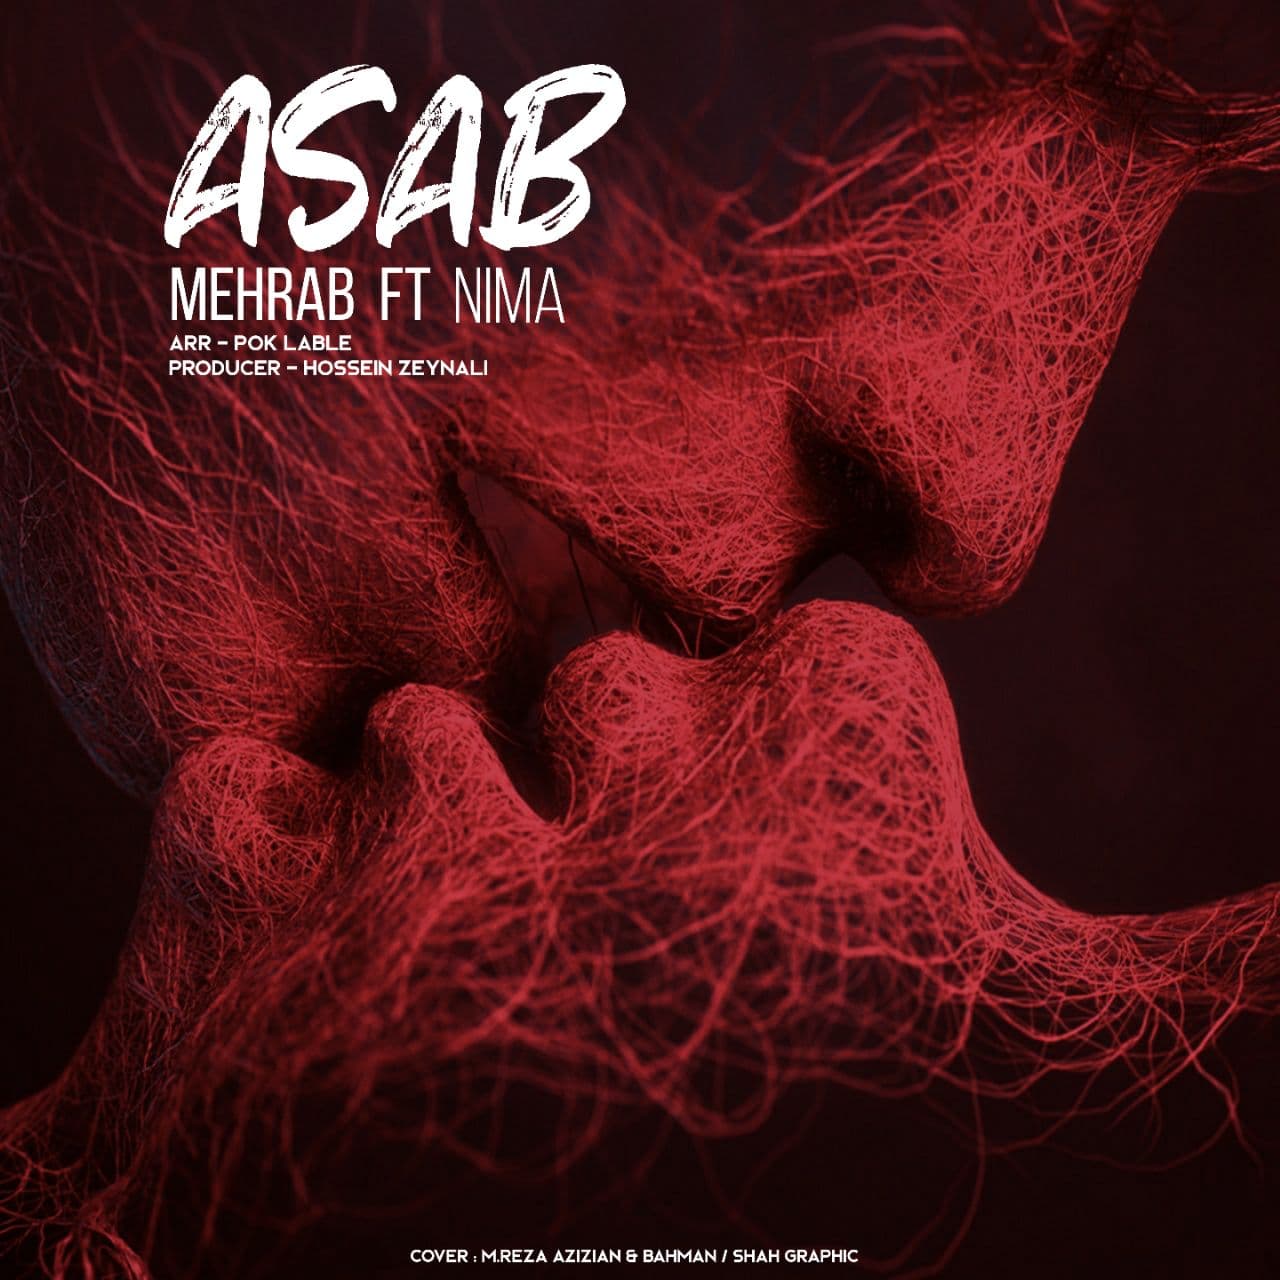  دانلود آهنگ جدید مهراب - عصب | Download New Music By Mehrab - Asab (Ft. Nima)